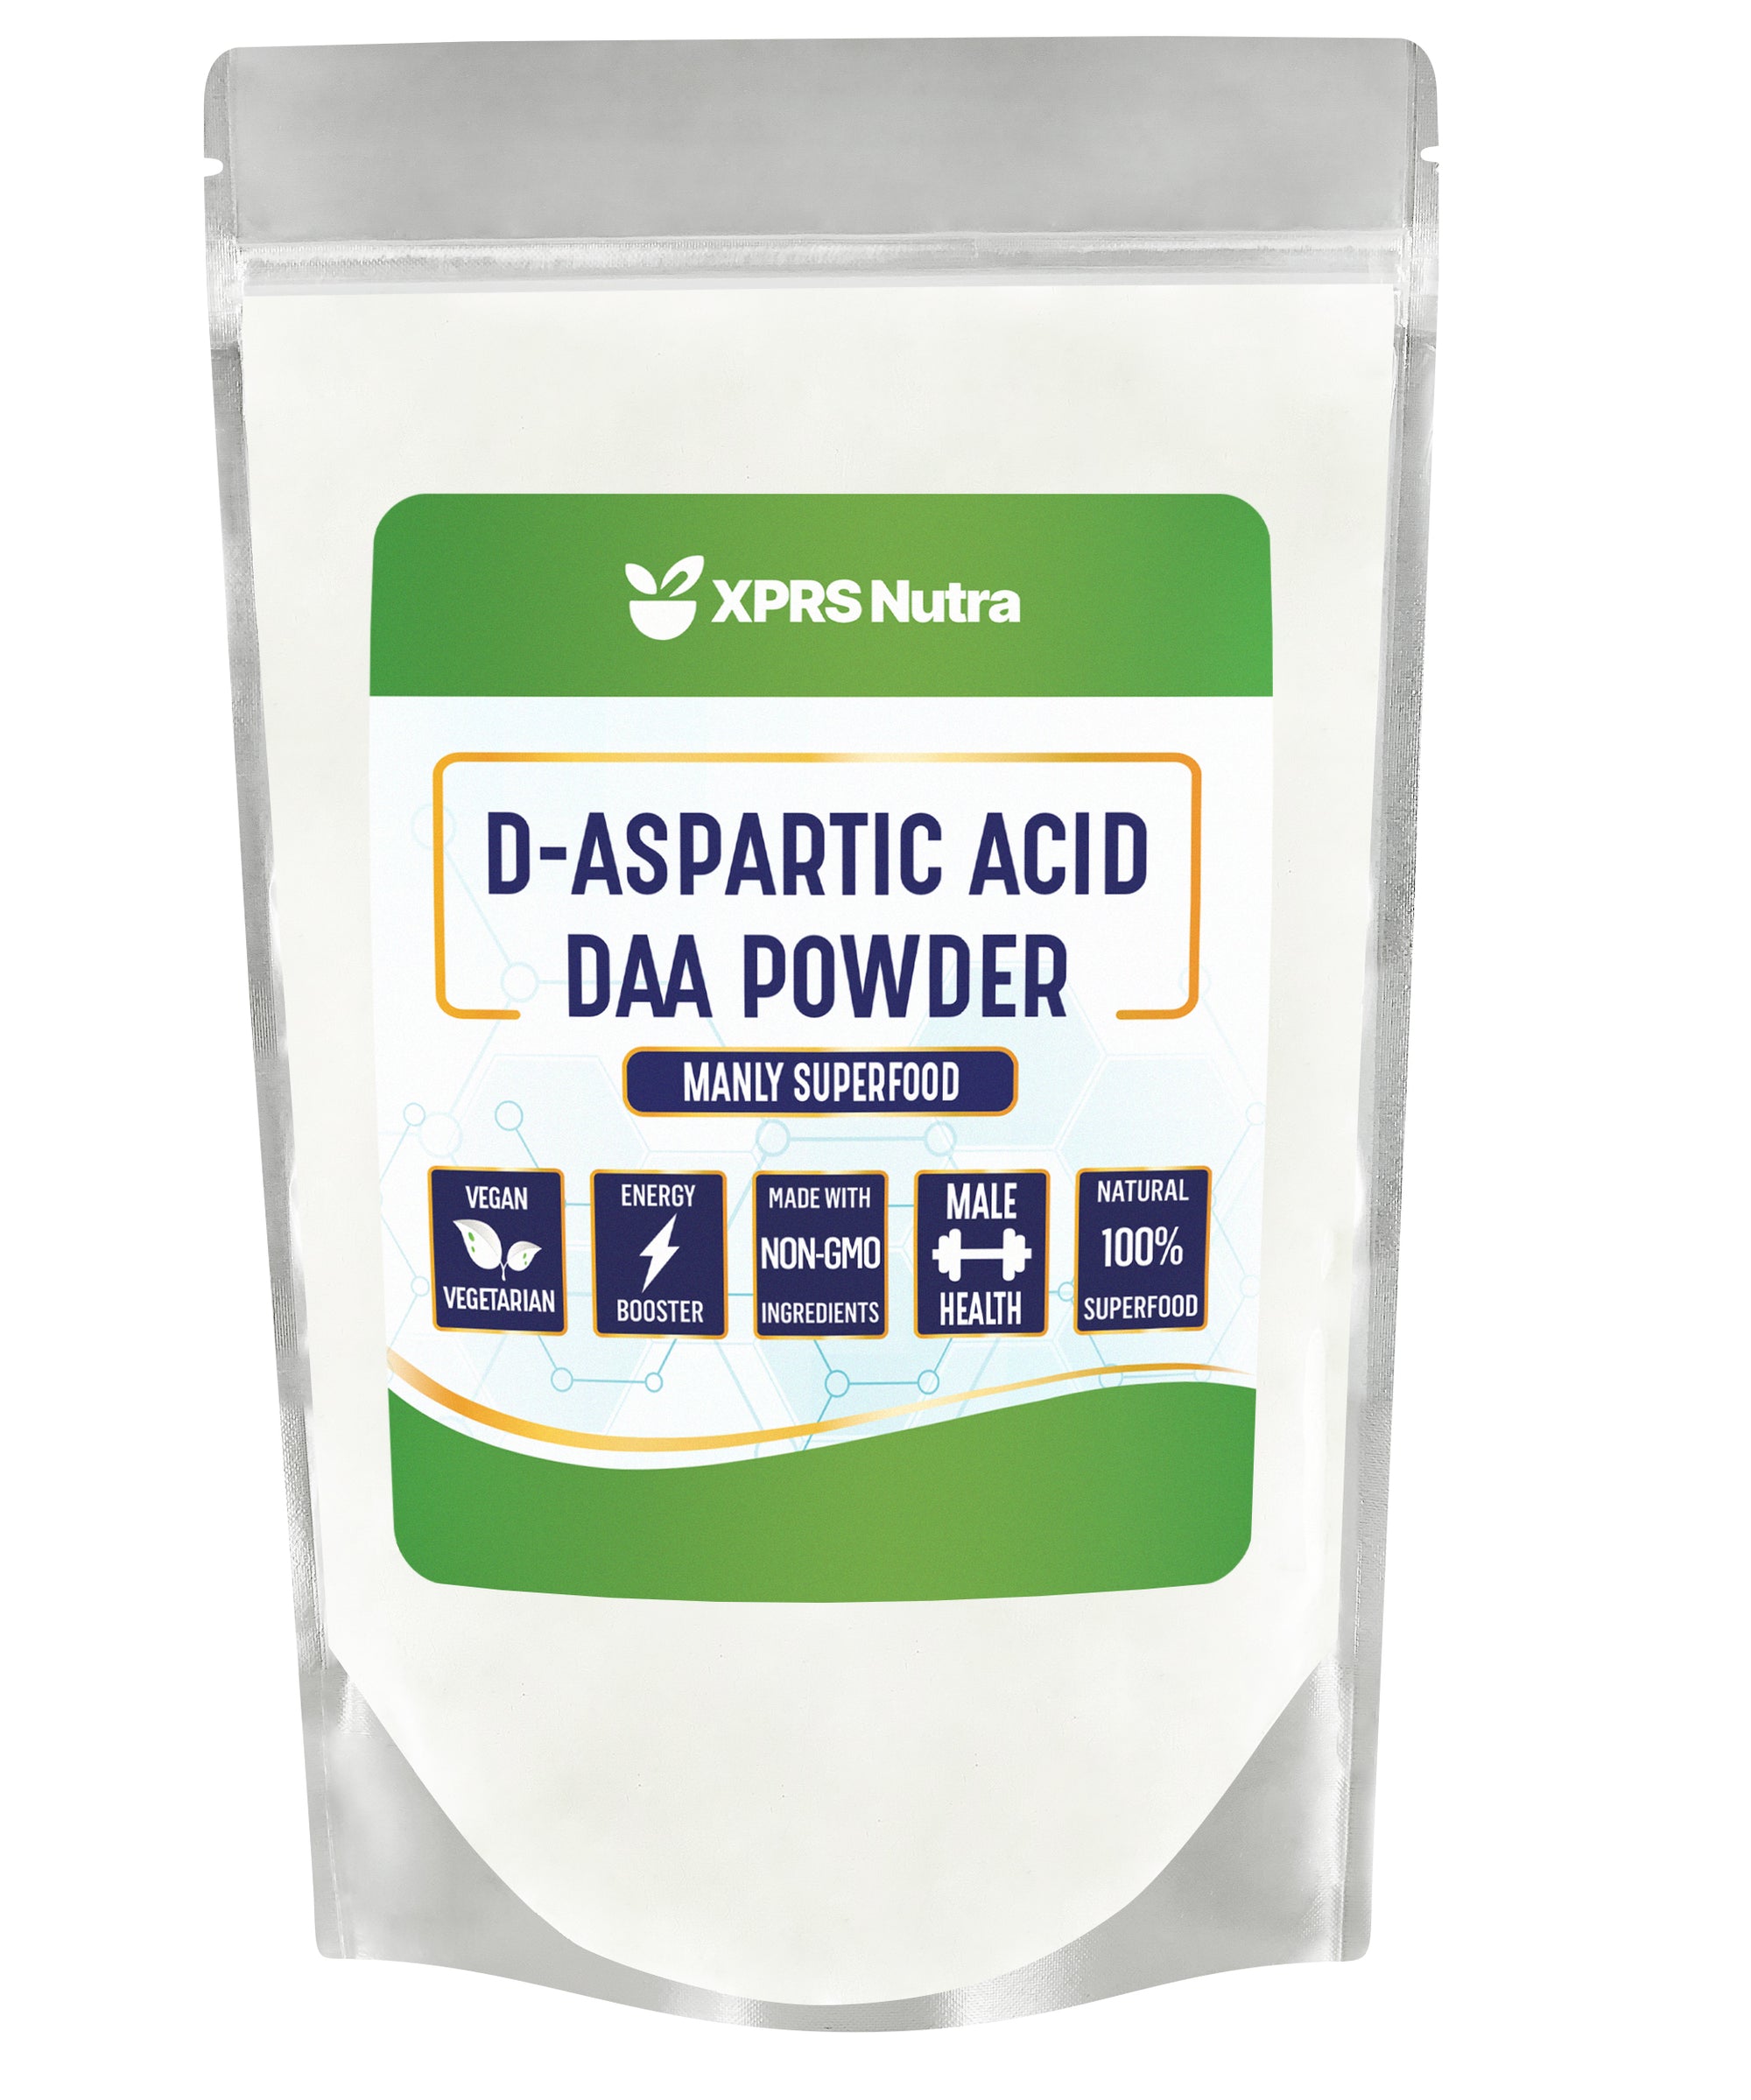 D-Aspartic Acid (DAA) Powder